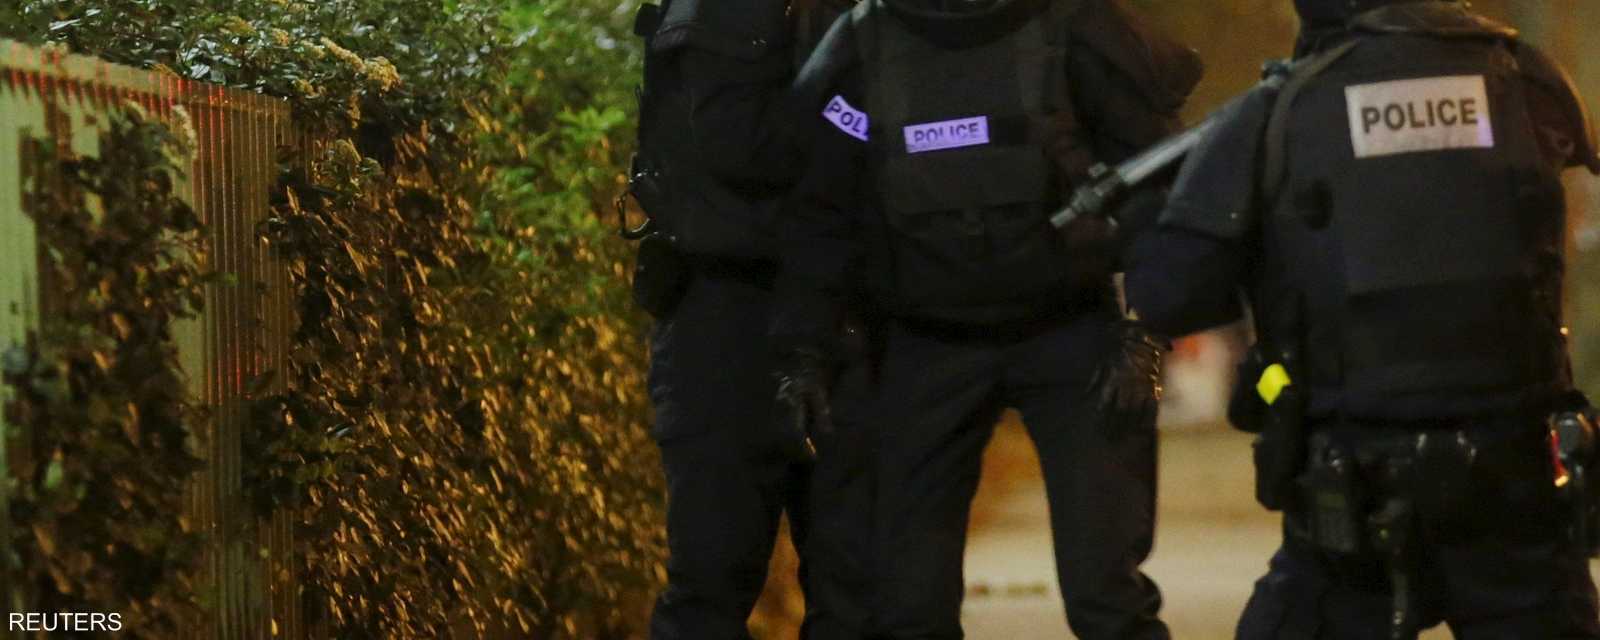 الشرطة الفرنسية تعتقل رجلا قرب مركز باتاكلان وتحاول التحقق من هويته